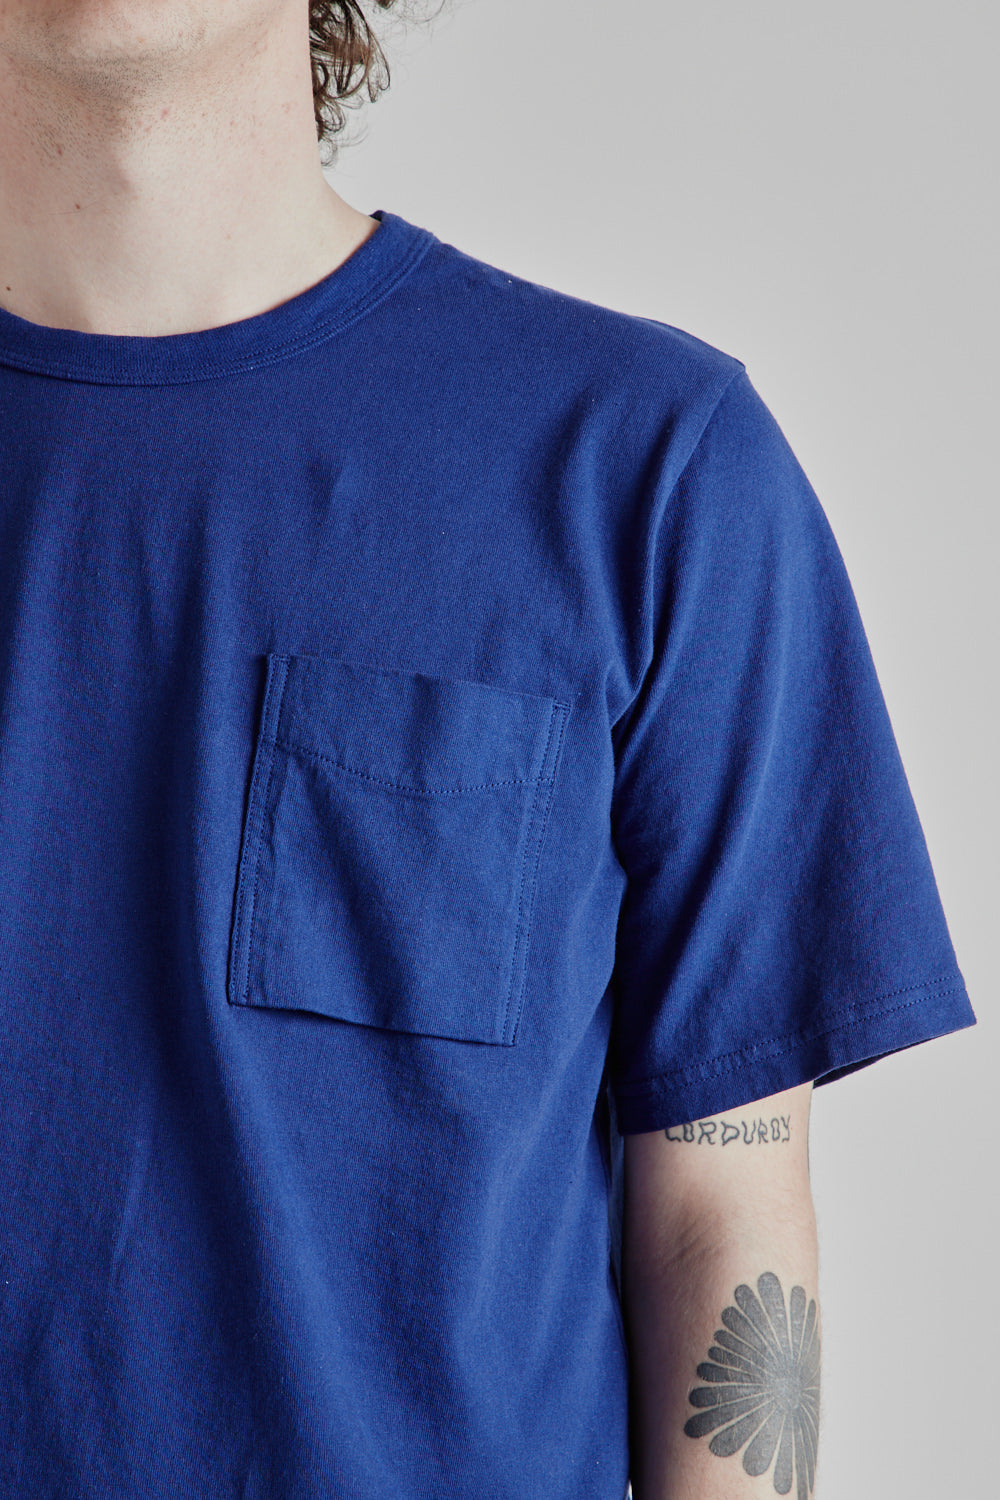 Pocket T-Shirt - Lapis Blue